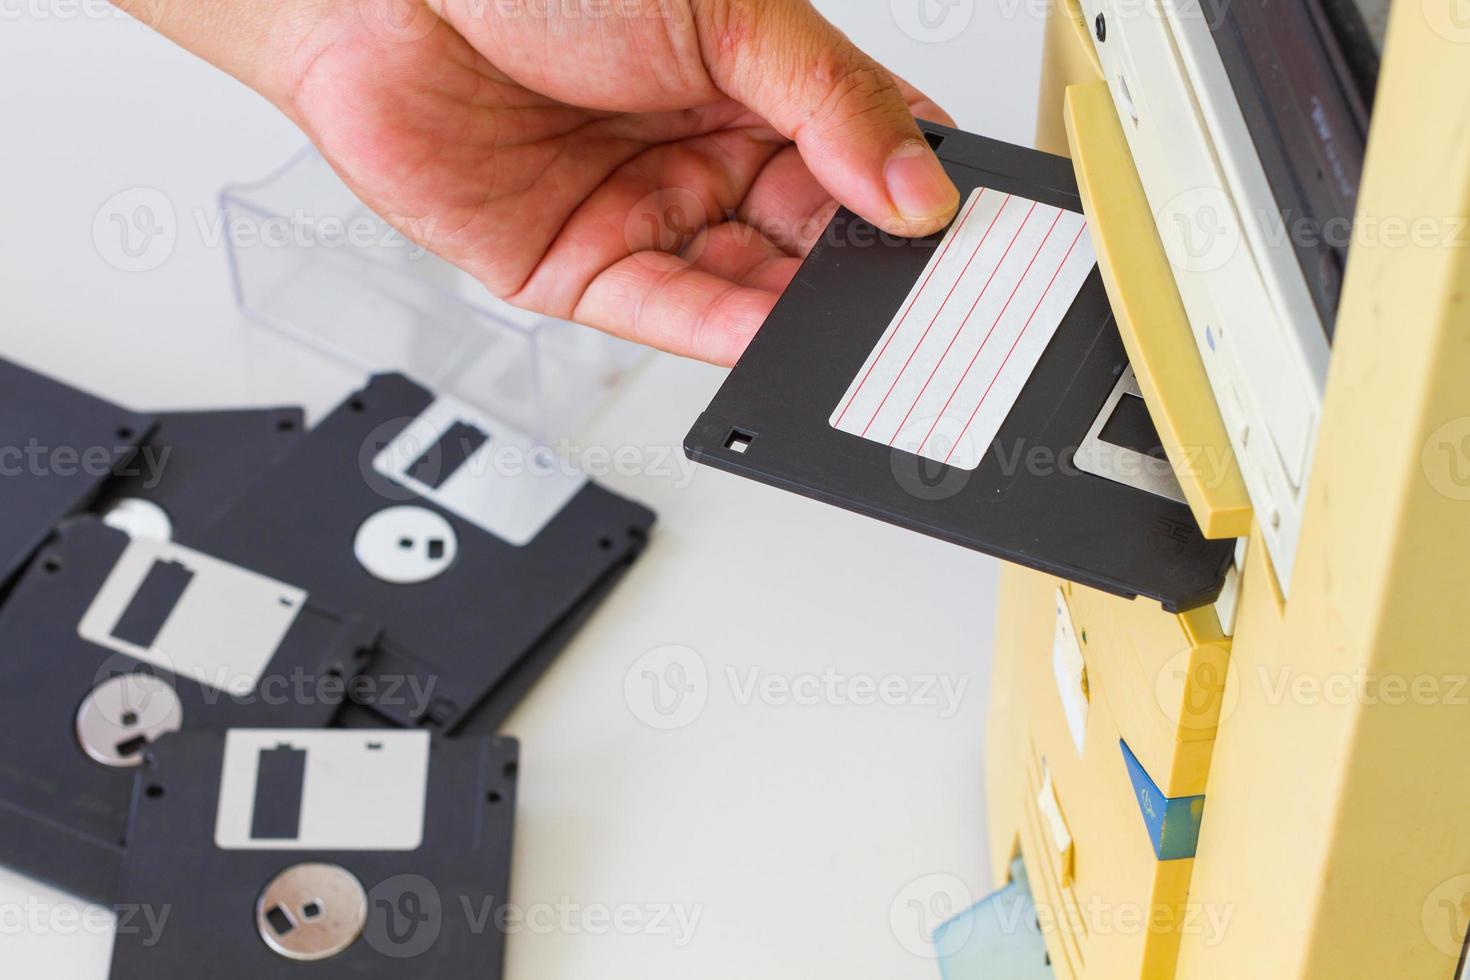 mano insertando un disquete de 3,5 pulgadas en una unidad de disquete foto